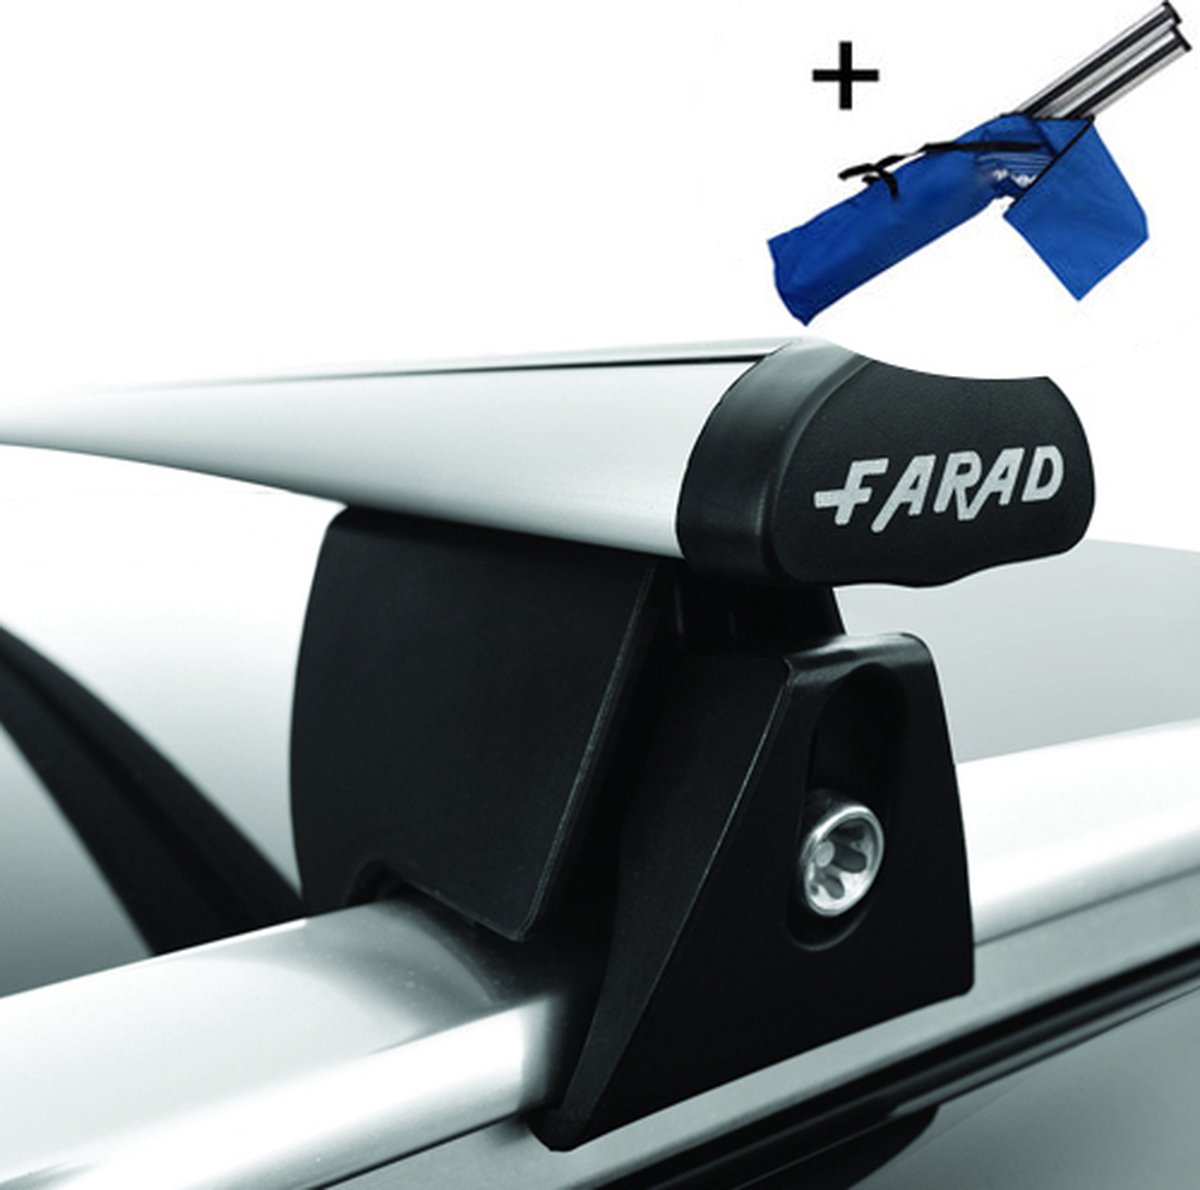 Dakdragers geschikt voor Mini Cooper 5 deurs hatchback vanaf 2014 - Aluminium inclusief dakdrager opbergtas